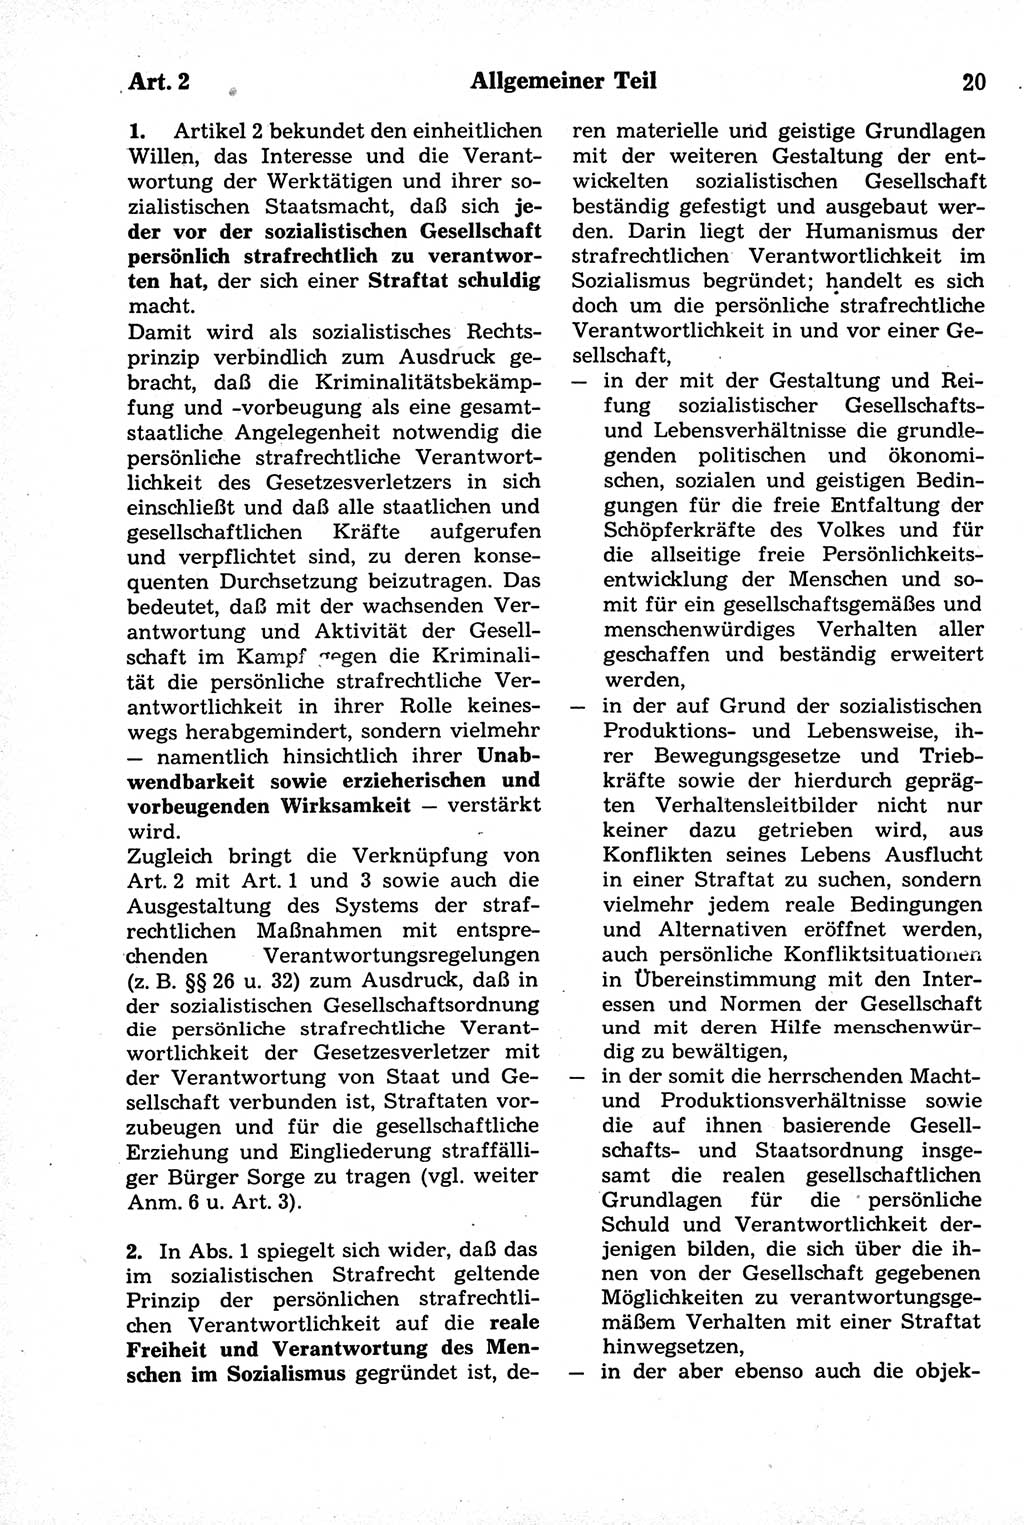 Strafrecht der Deutschen Demokratischen Republik (DDR), Kommentar zum Strafgesetzbuch (StGB) 1981, Seite 20 (Strafr. DDR Komm. StGB 1981, S. 20)